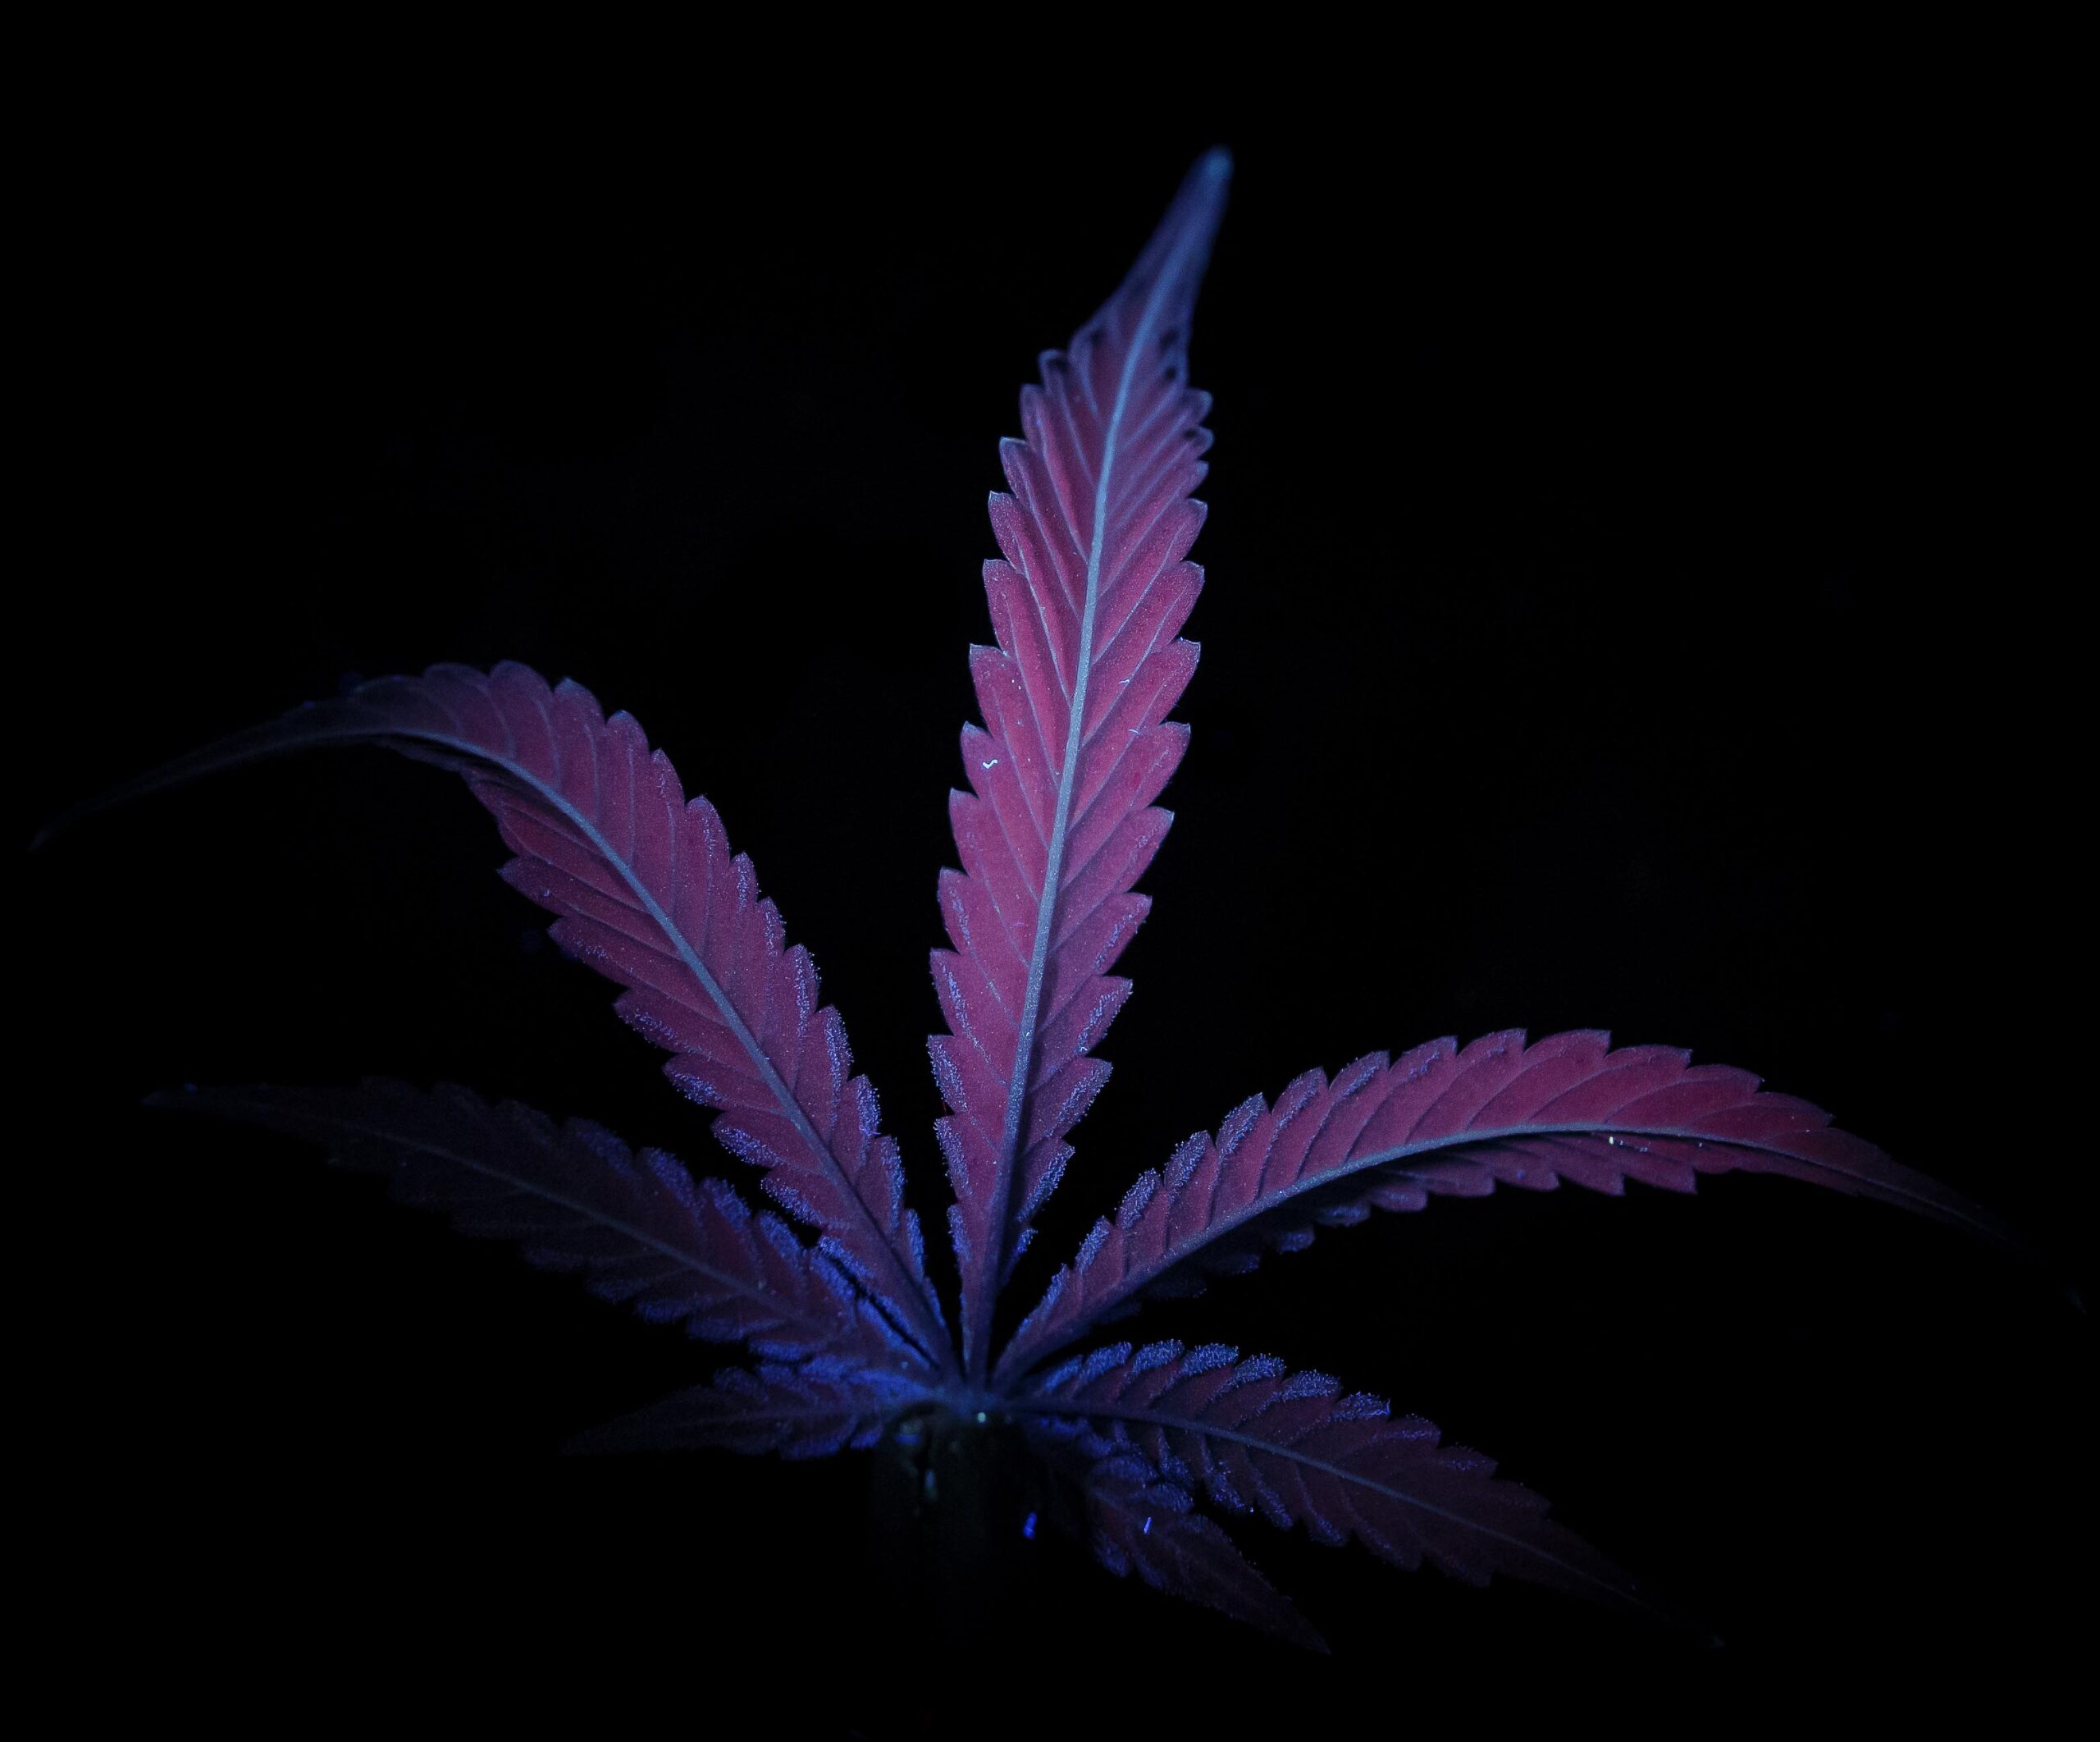 Chlorophyll Rich Cannabis Leaf - UV Photography